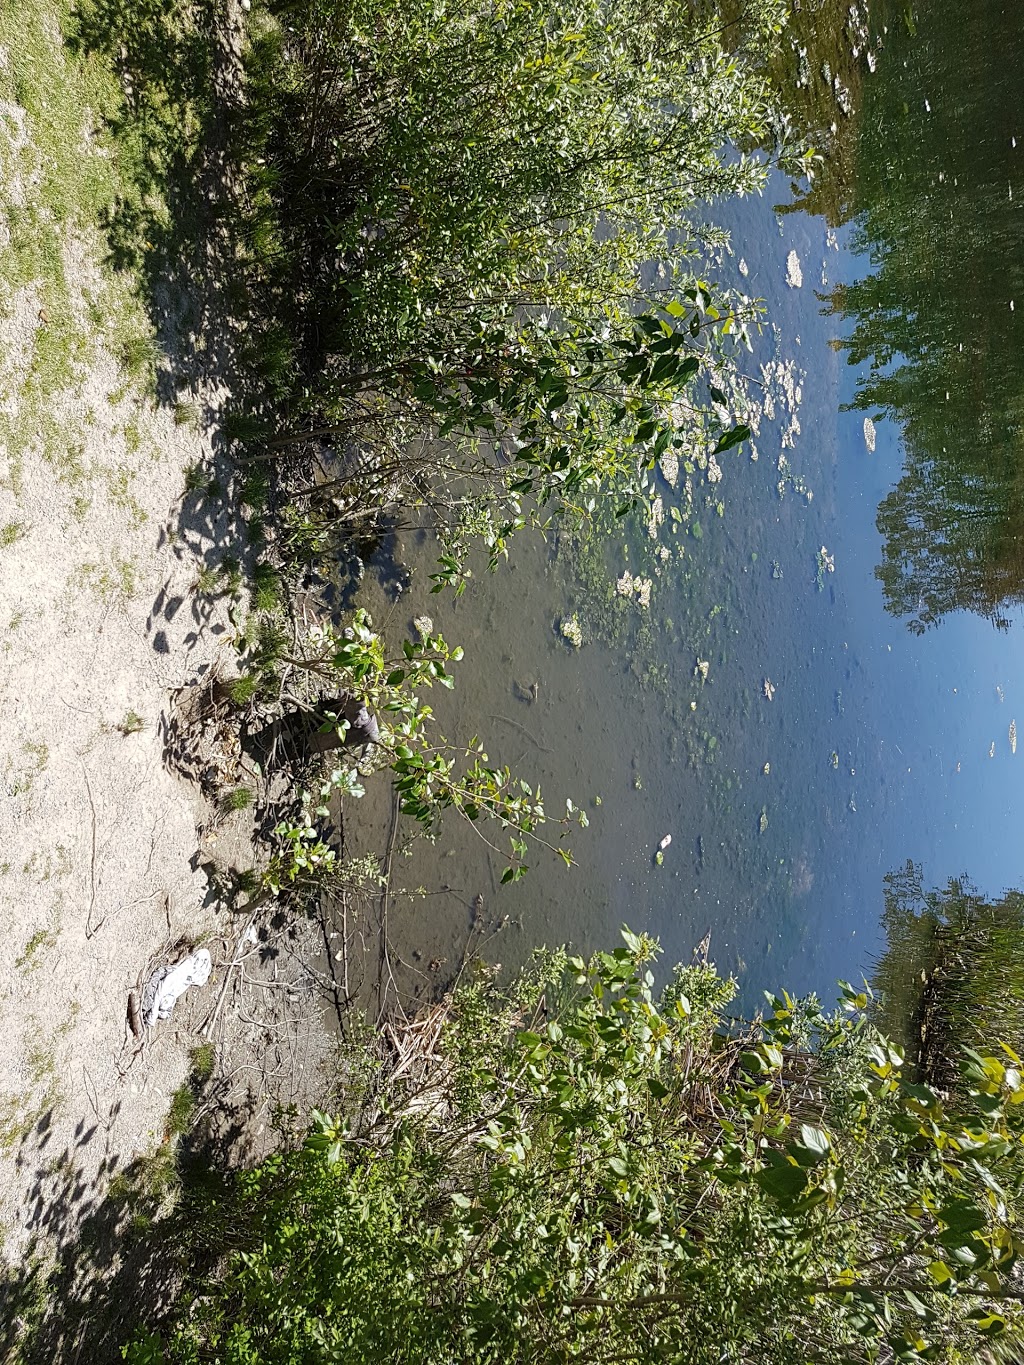 North Creek Duck Pond | 18590 70 Ave, Surrey, BC V4N 6B6, Canada